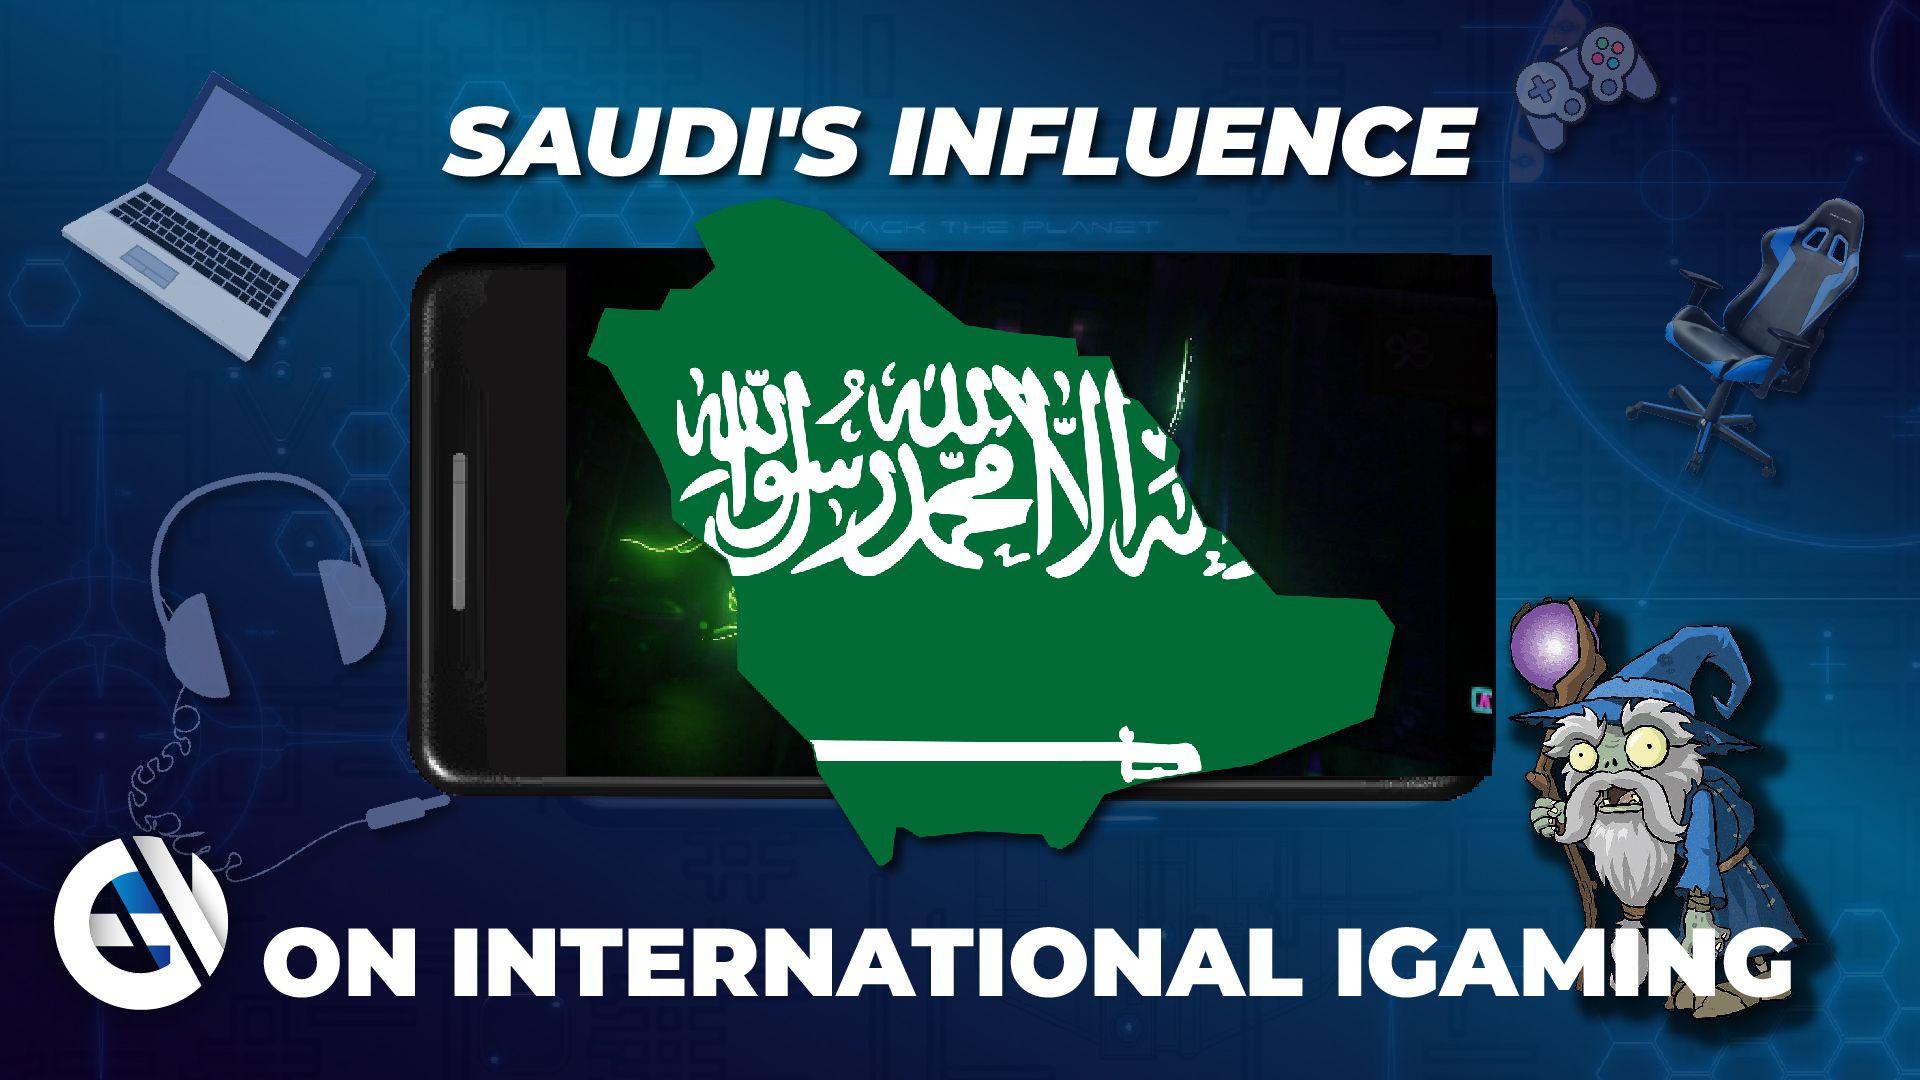 La influencia saudí en el juego internacional